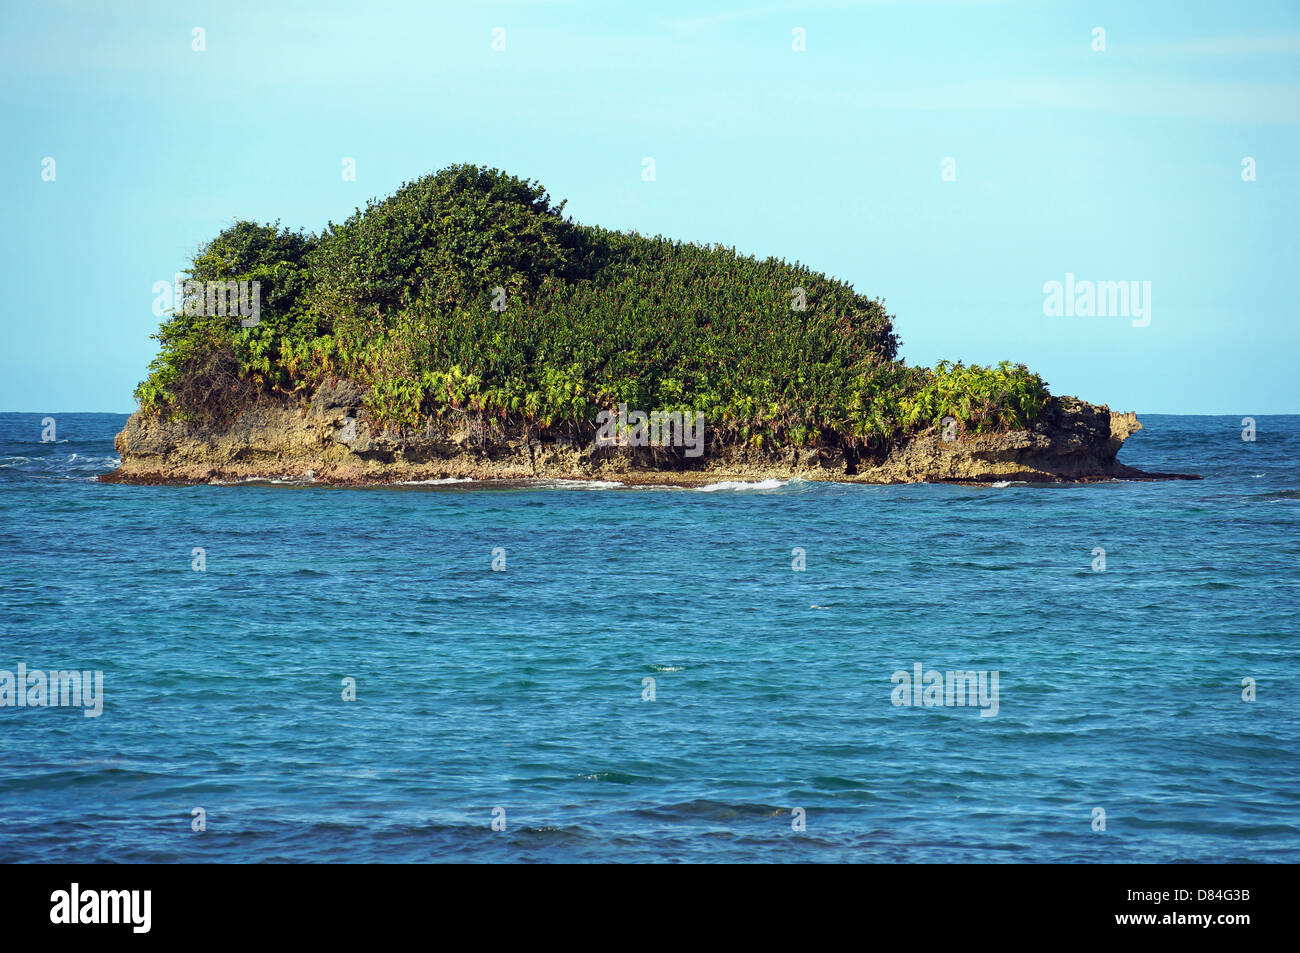 Île rocheuse couverte de végétation tropicale, l'archipel de Bocas del Toro, Bastimentos island, mer des Caraïbes, le Panama Banque D'Images